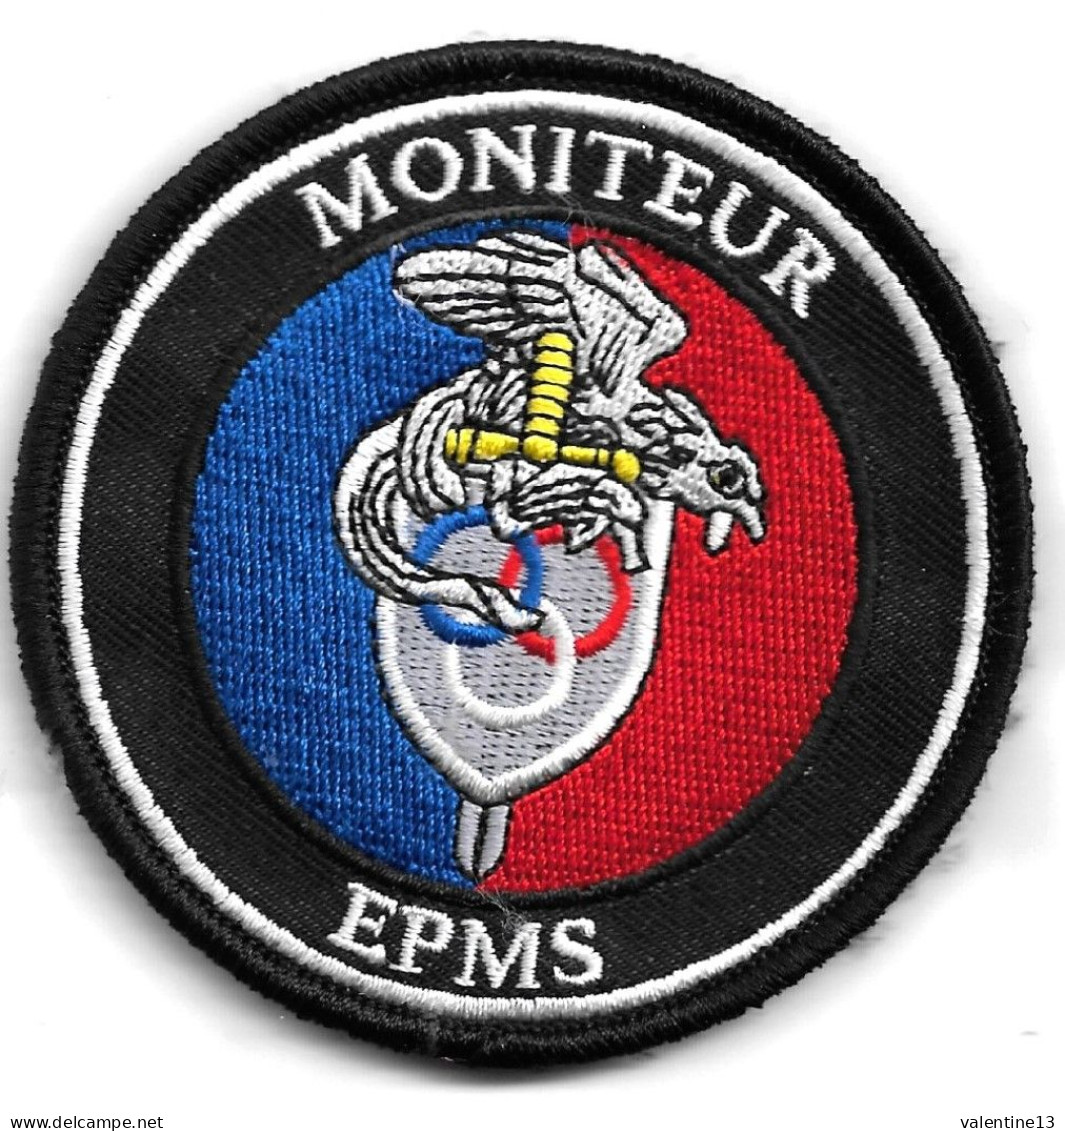 Ecusson GENDARMERIE NATIONALE MONITEUR EPMS - Police